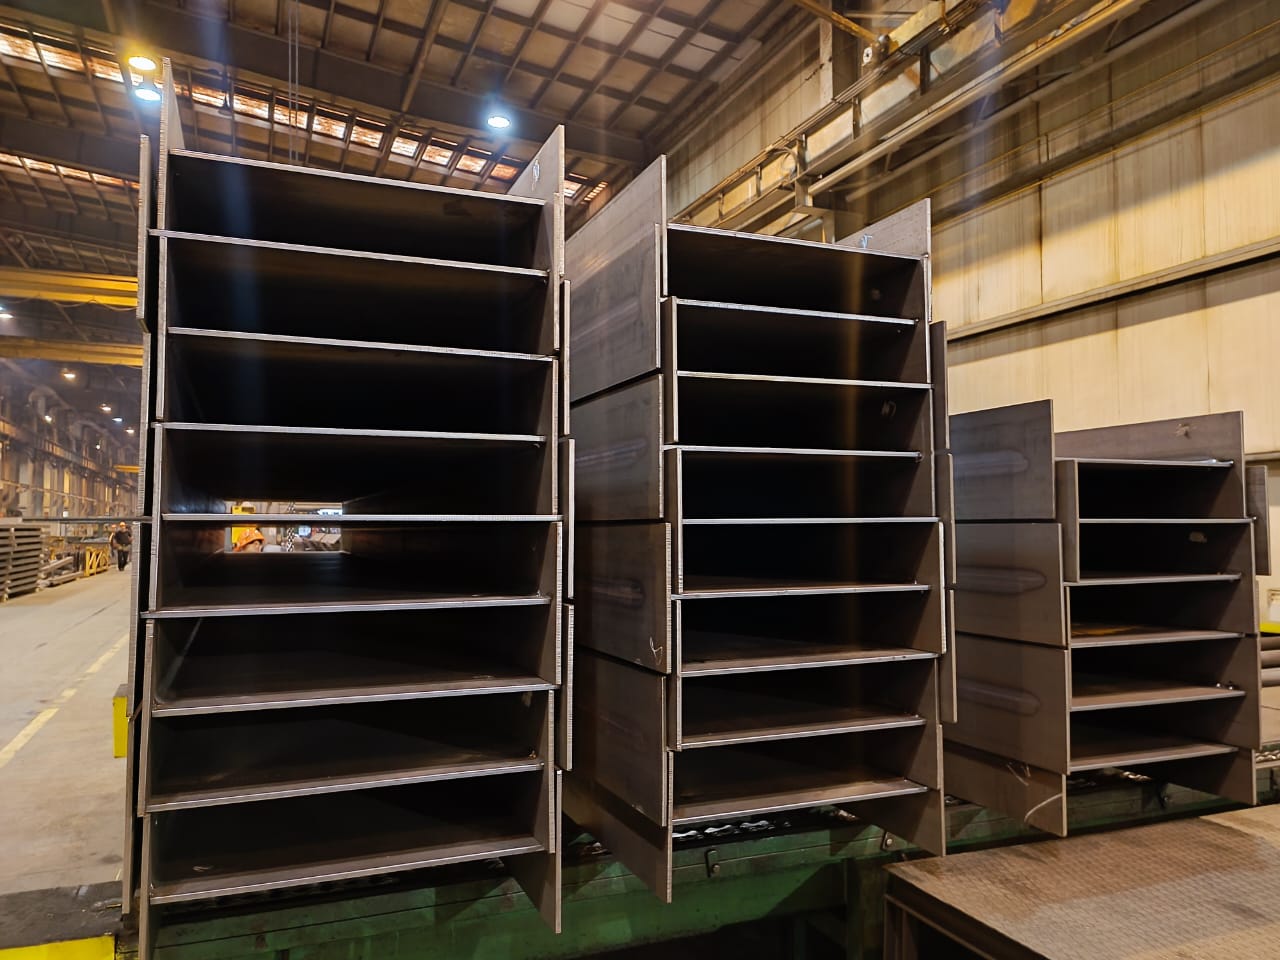 «Венталл стальные решения» запустил ещё одну сварочную линию: 300 тонн сварного двутавра в месяц